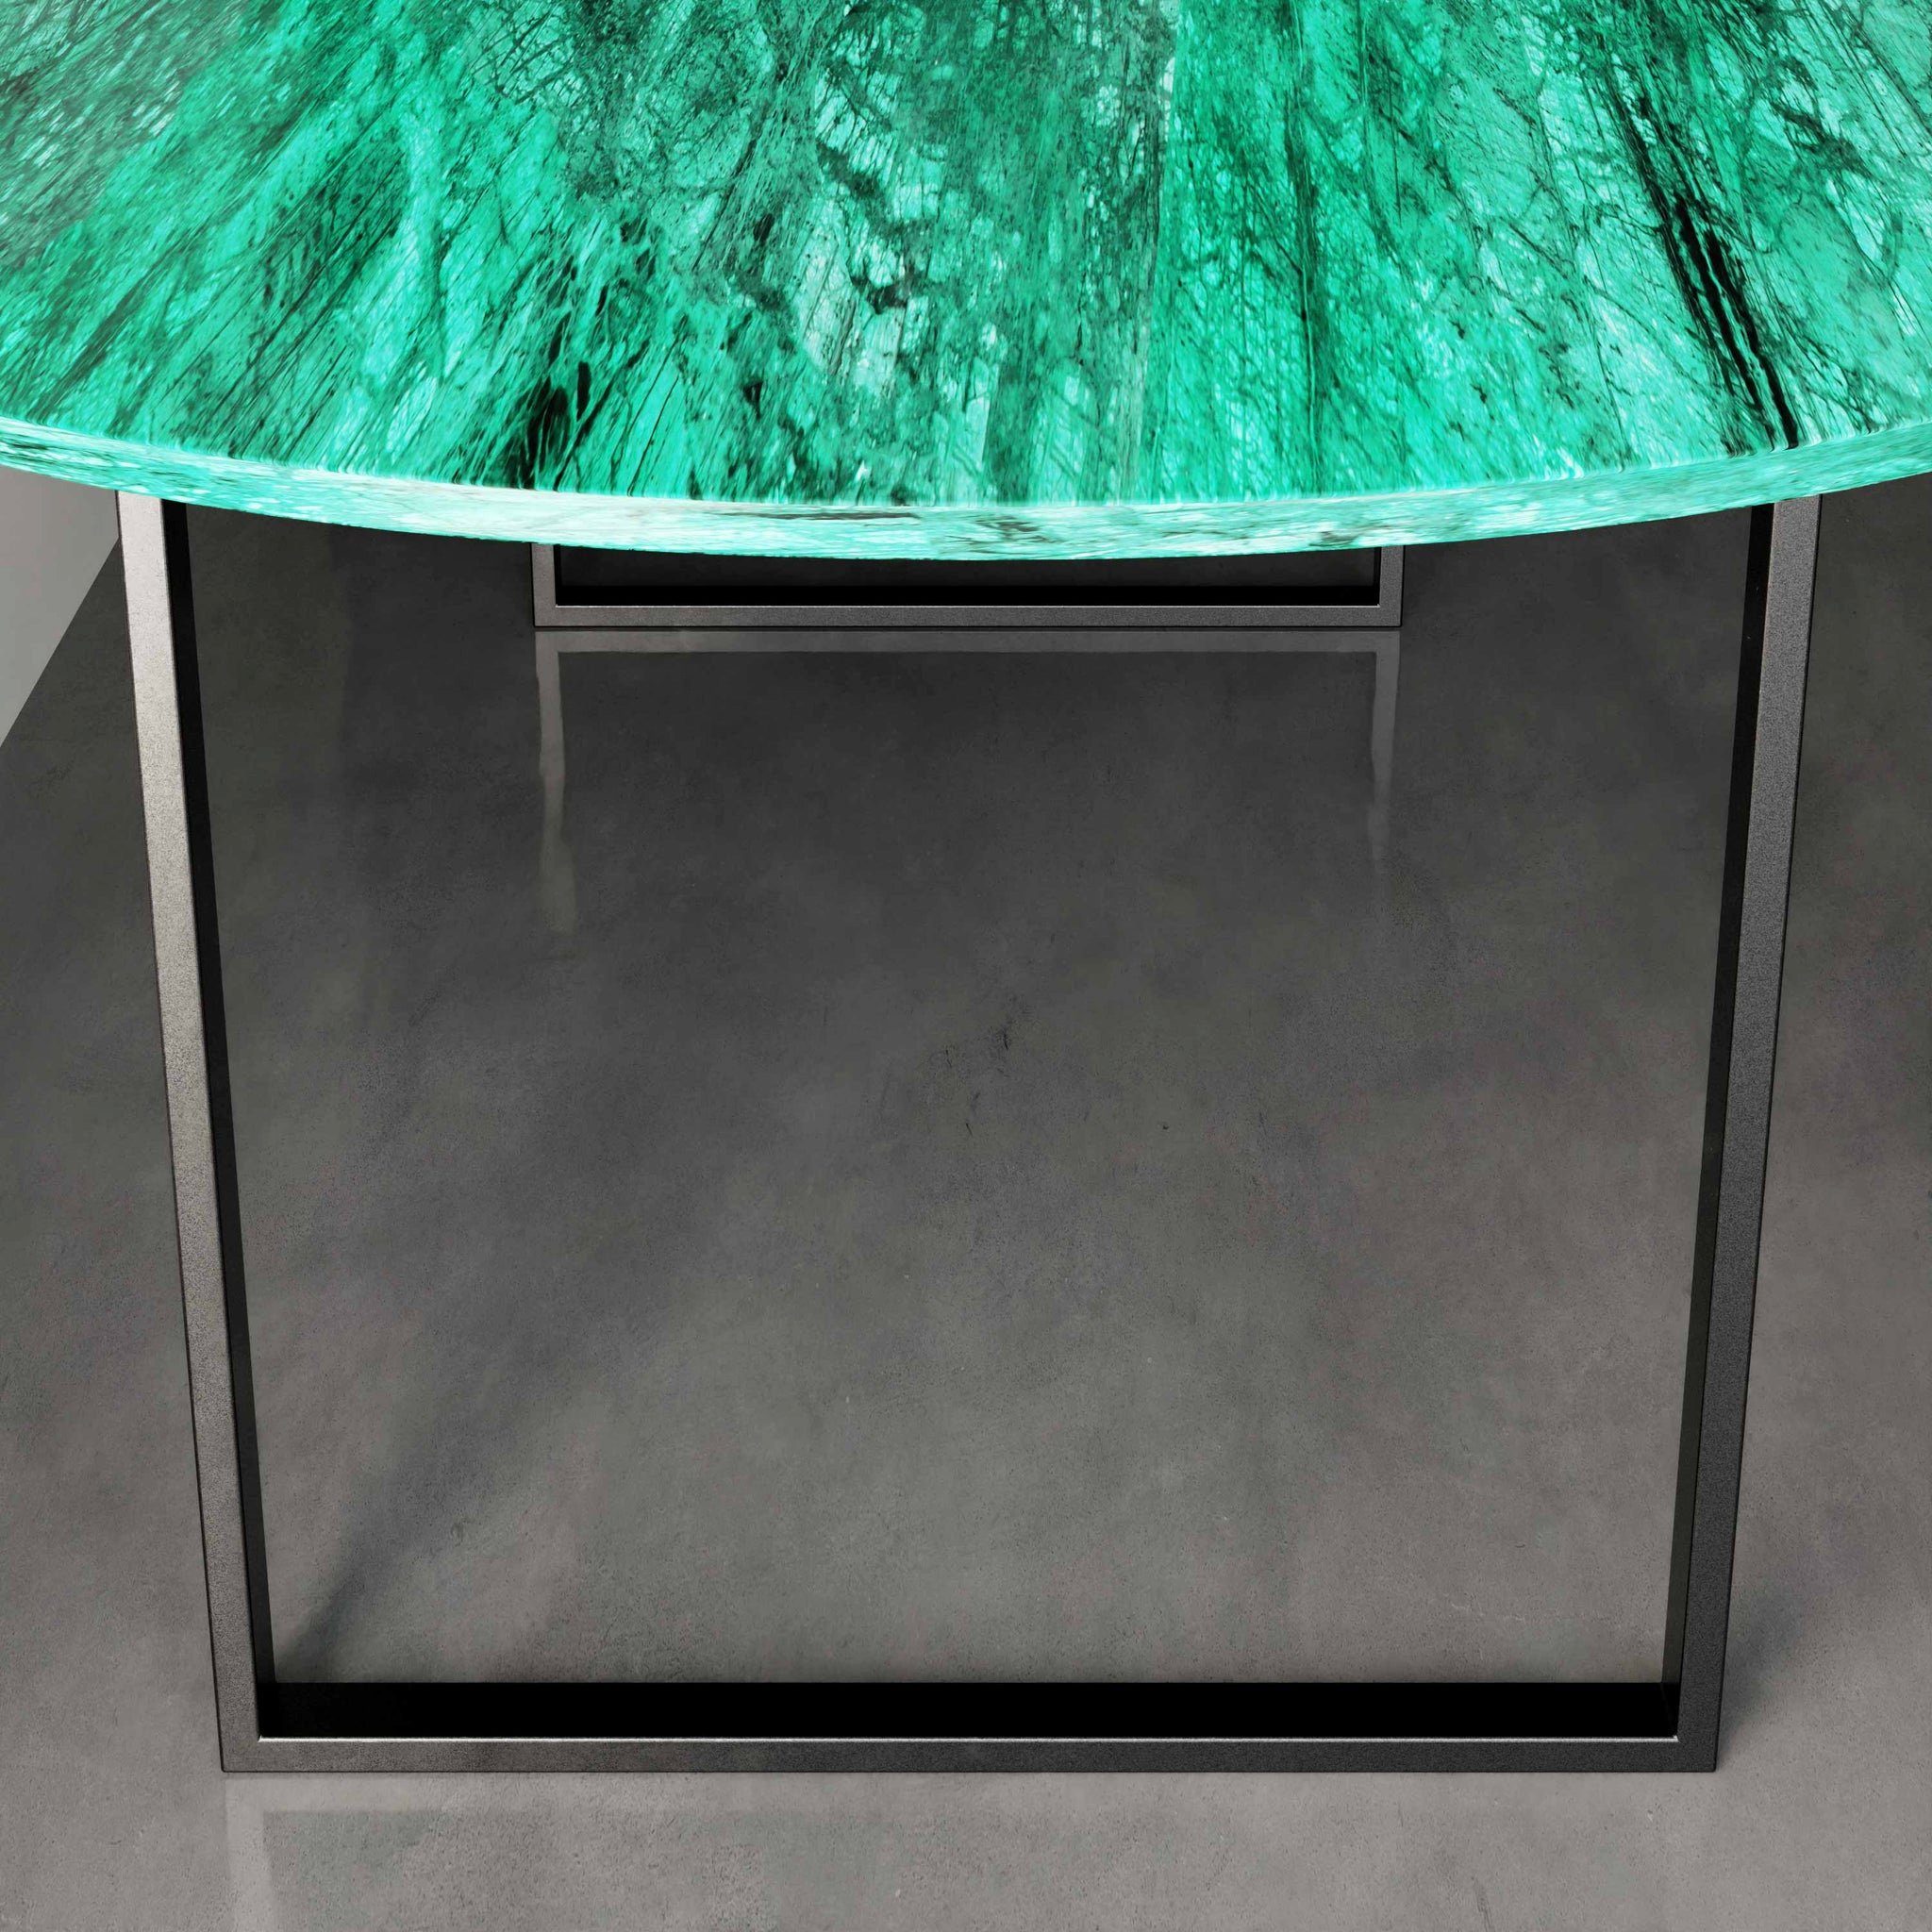 BERGEN Verde ECHTEM MAGNA Esstisch oval, Esstisch Metallgestell, mit 200x100x75cm OVAL weiß MARMOR, Atelier schwarz Guatemala